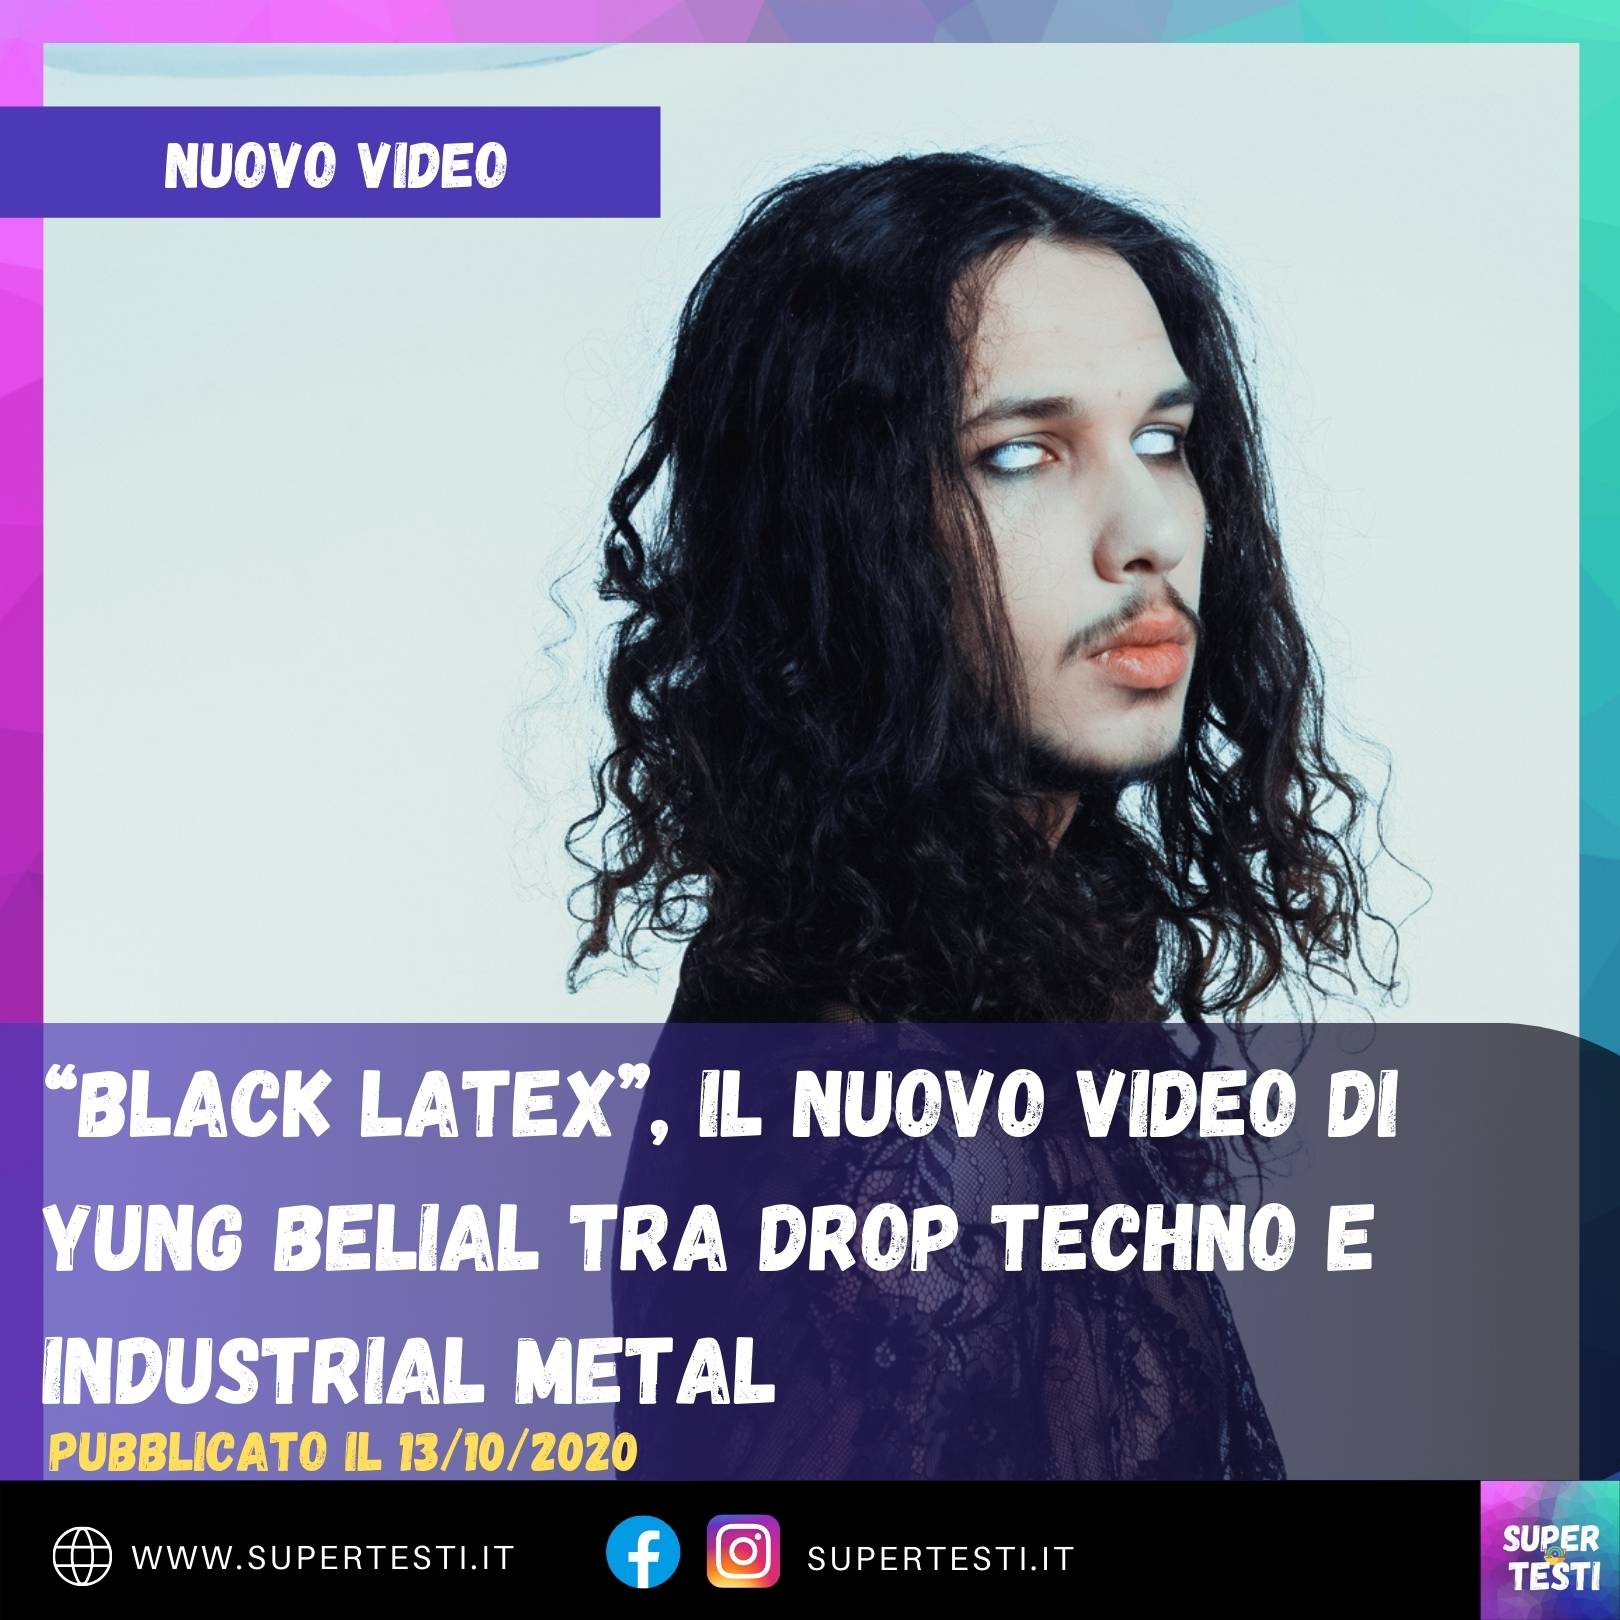 “Black Latex”, il nuovo video di Yung Belial tra drop techno e industrial metal